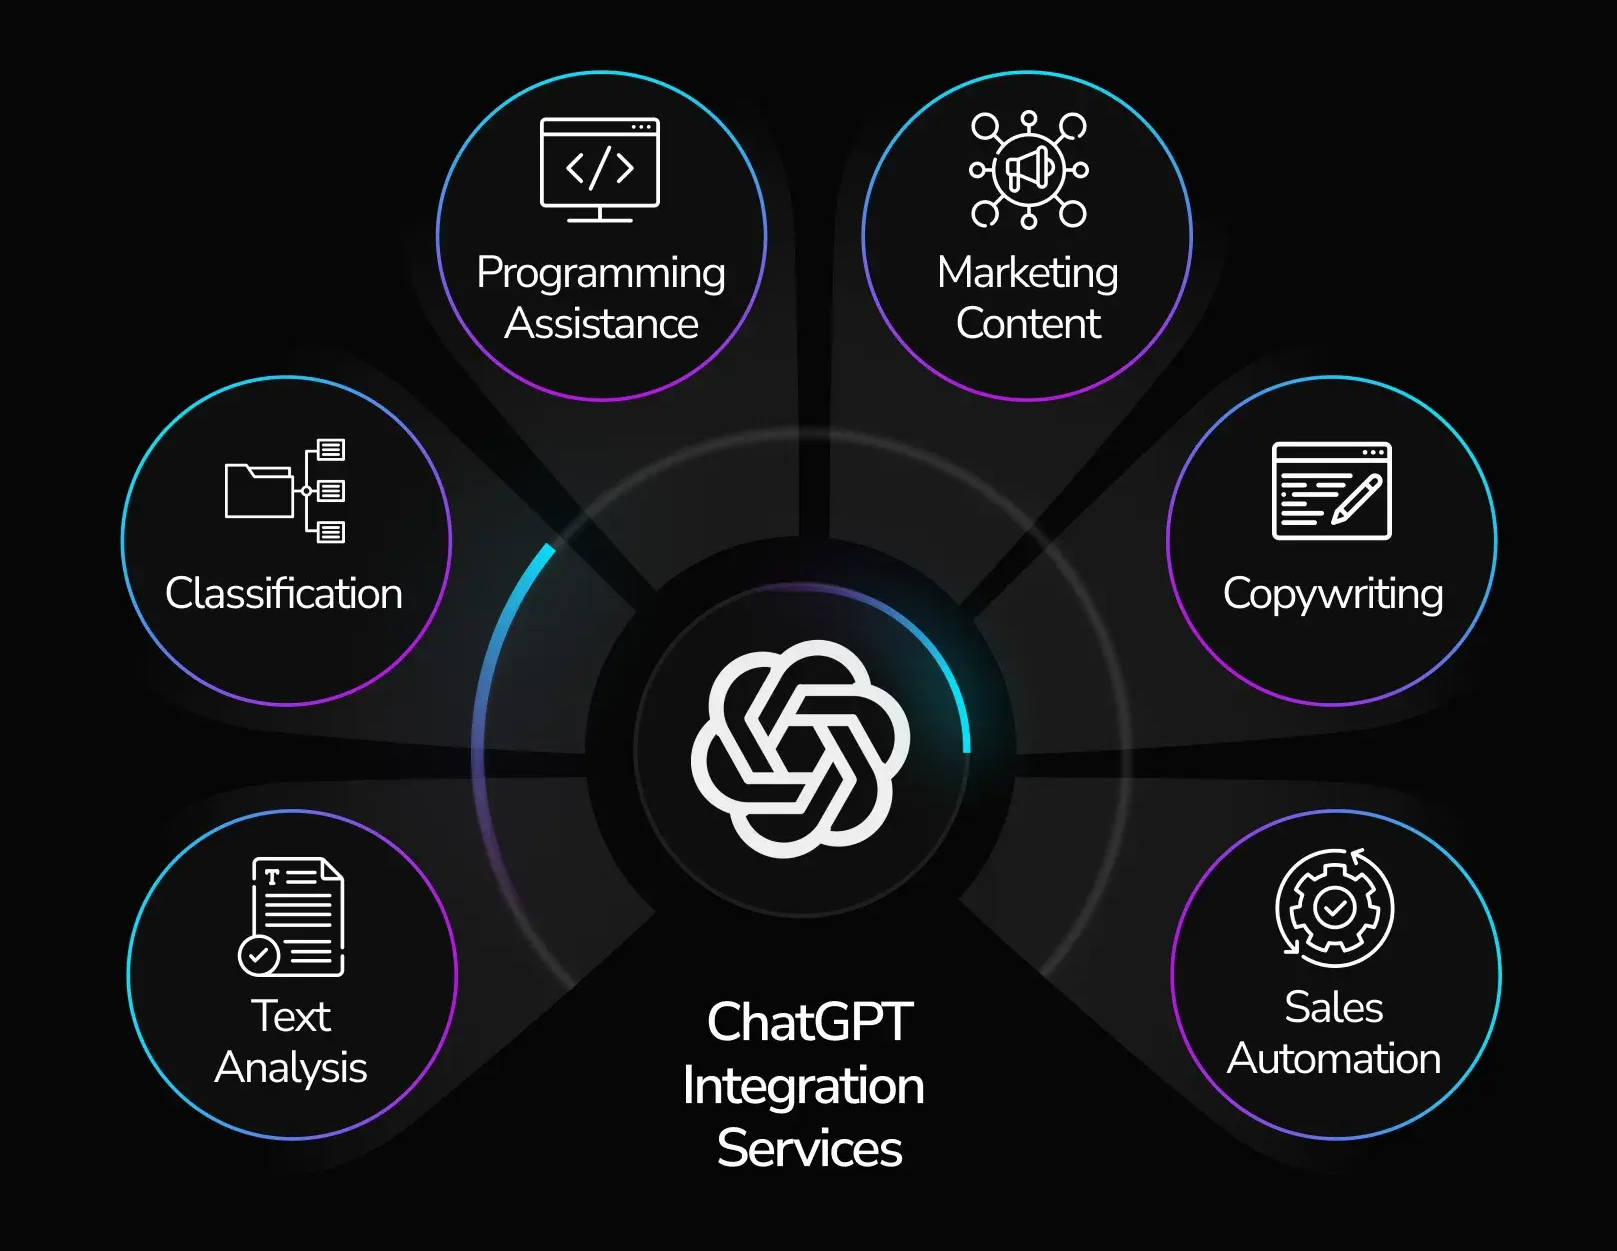 chatgpt-integration-services-banner